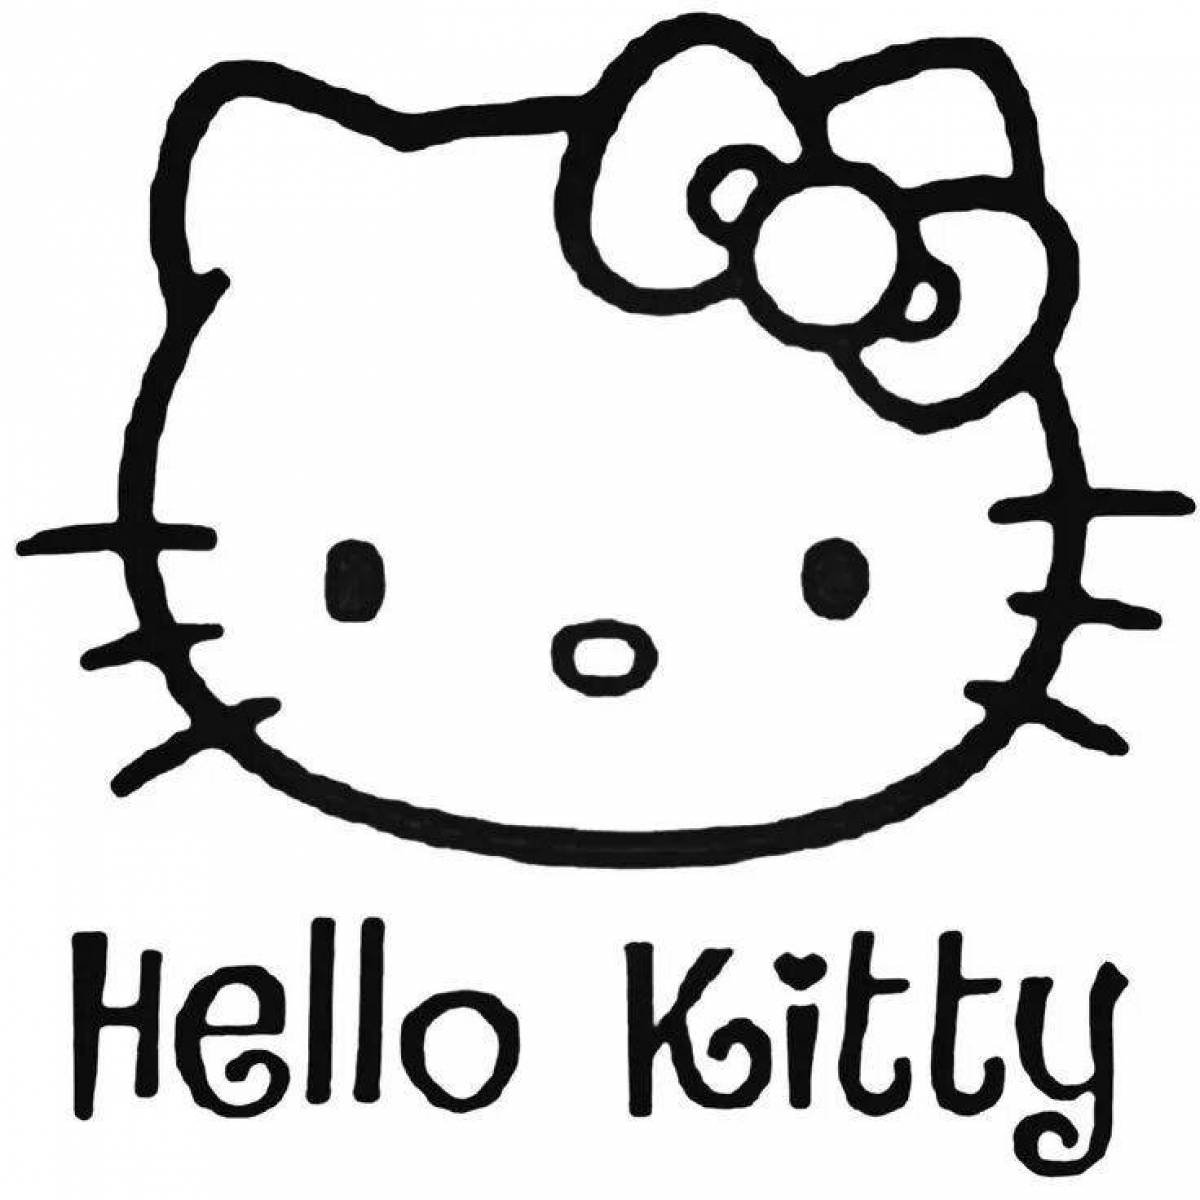 Как переводится хеллоу китти. [Tllj rbnb. Хеллоу Китти. Хеллоу Китти hello Kitty hello Kitty. Hello Kitty Хелло Китти.